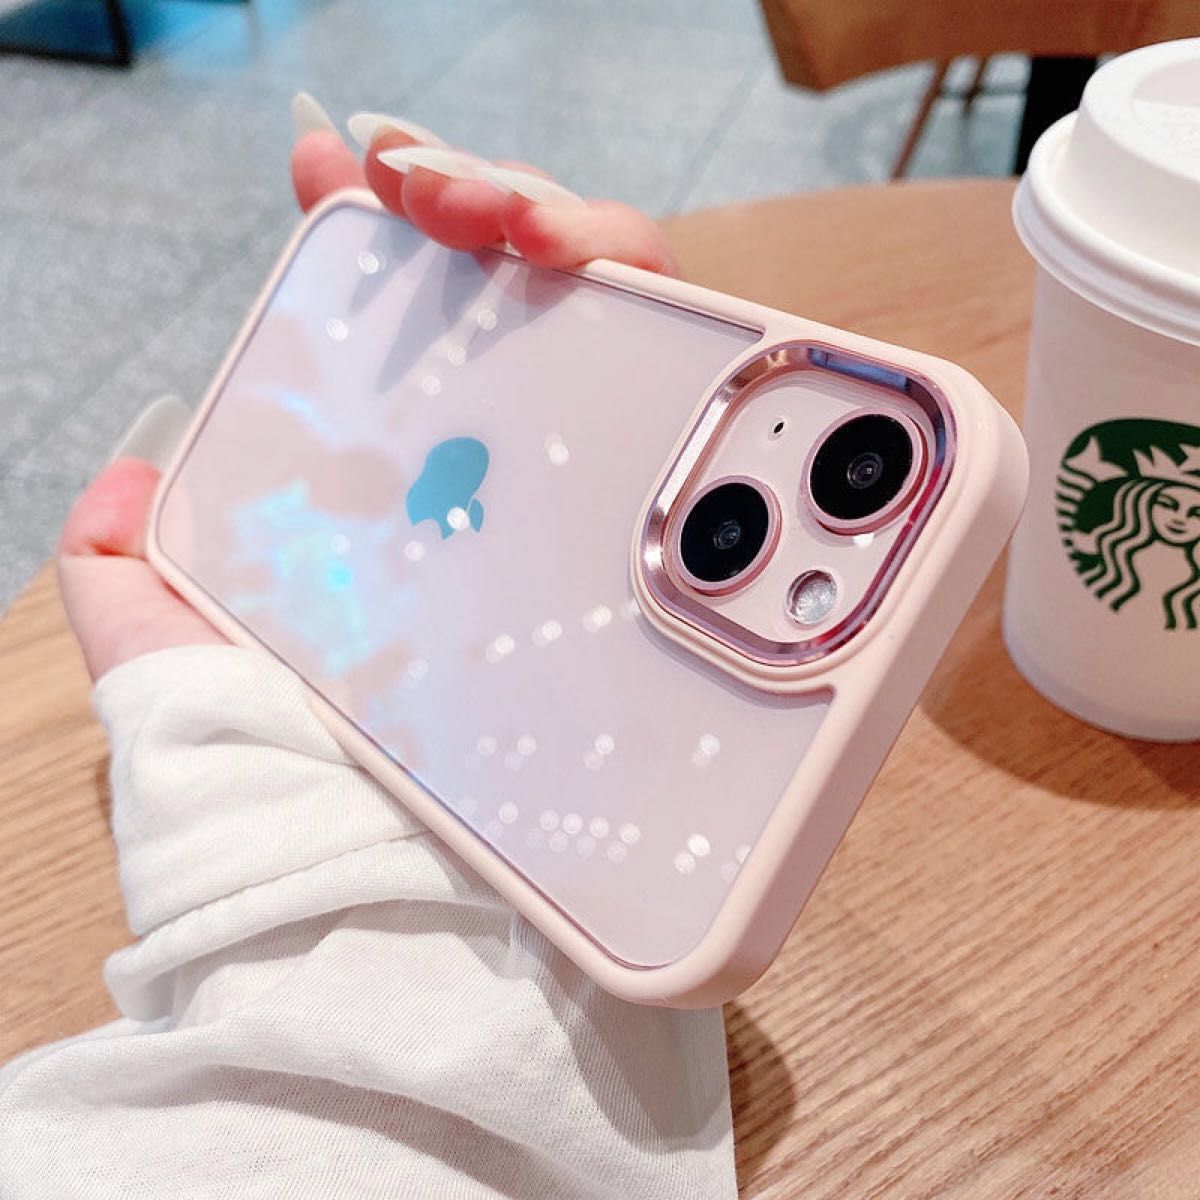 ★大人気★ iPhone13Proケース ピンク かわいい スマホケース iPhone用ケース 韓国 オルチャン